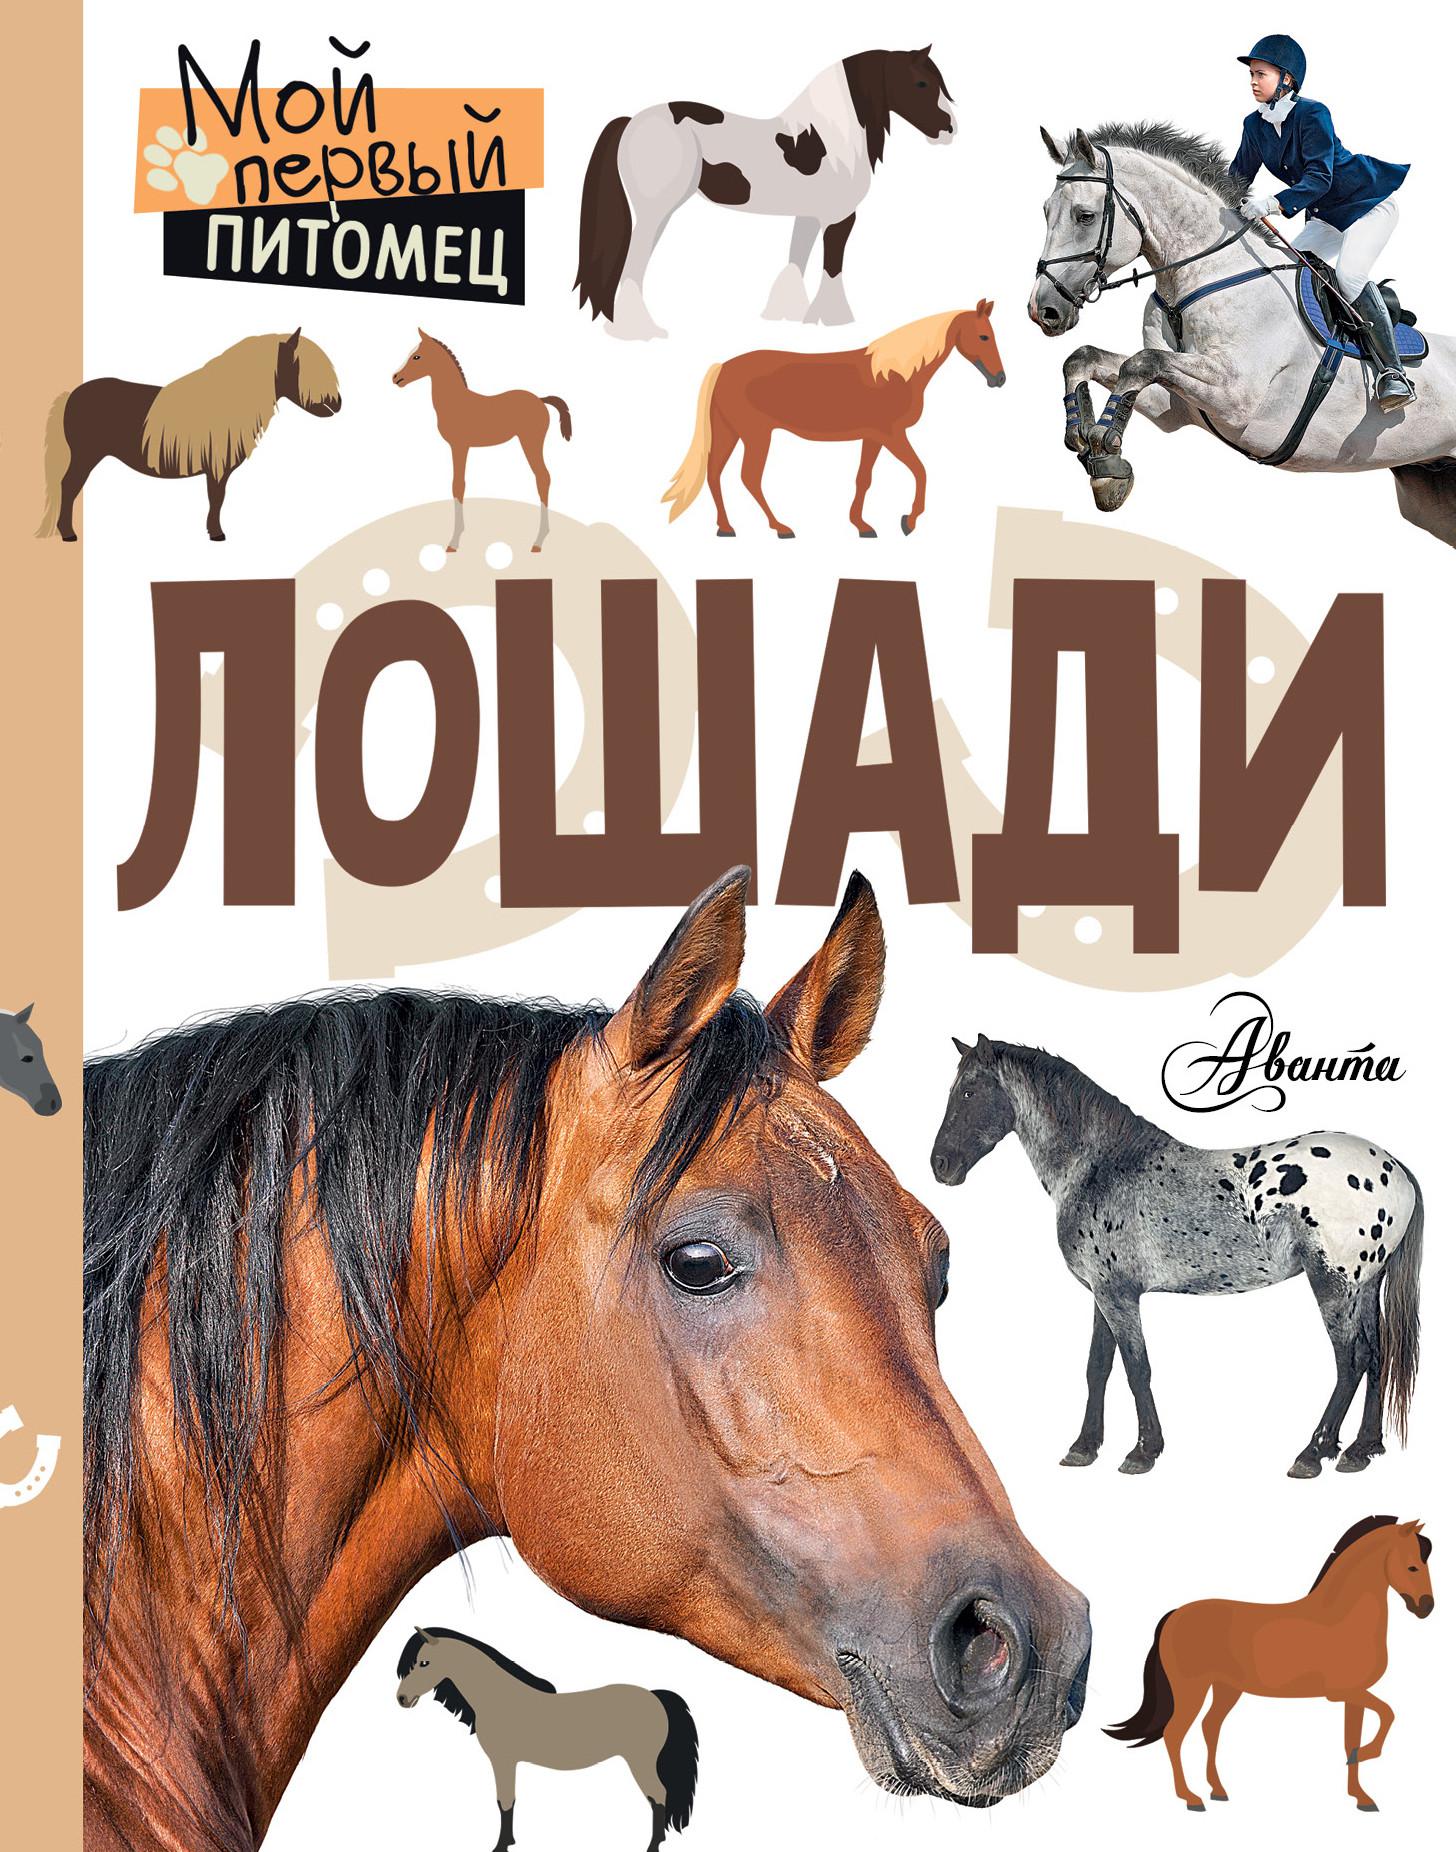 Книги верховая. Книги про лошадей. Книги о лошадях для детей. Книги про лошадей Художественные.